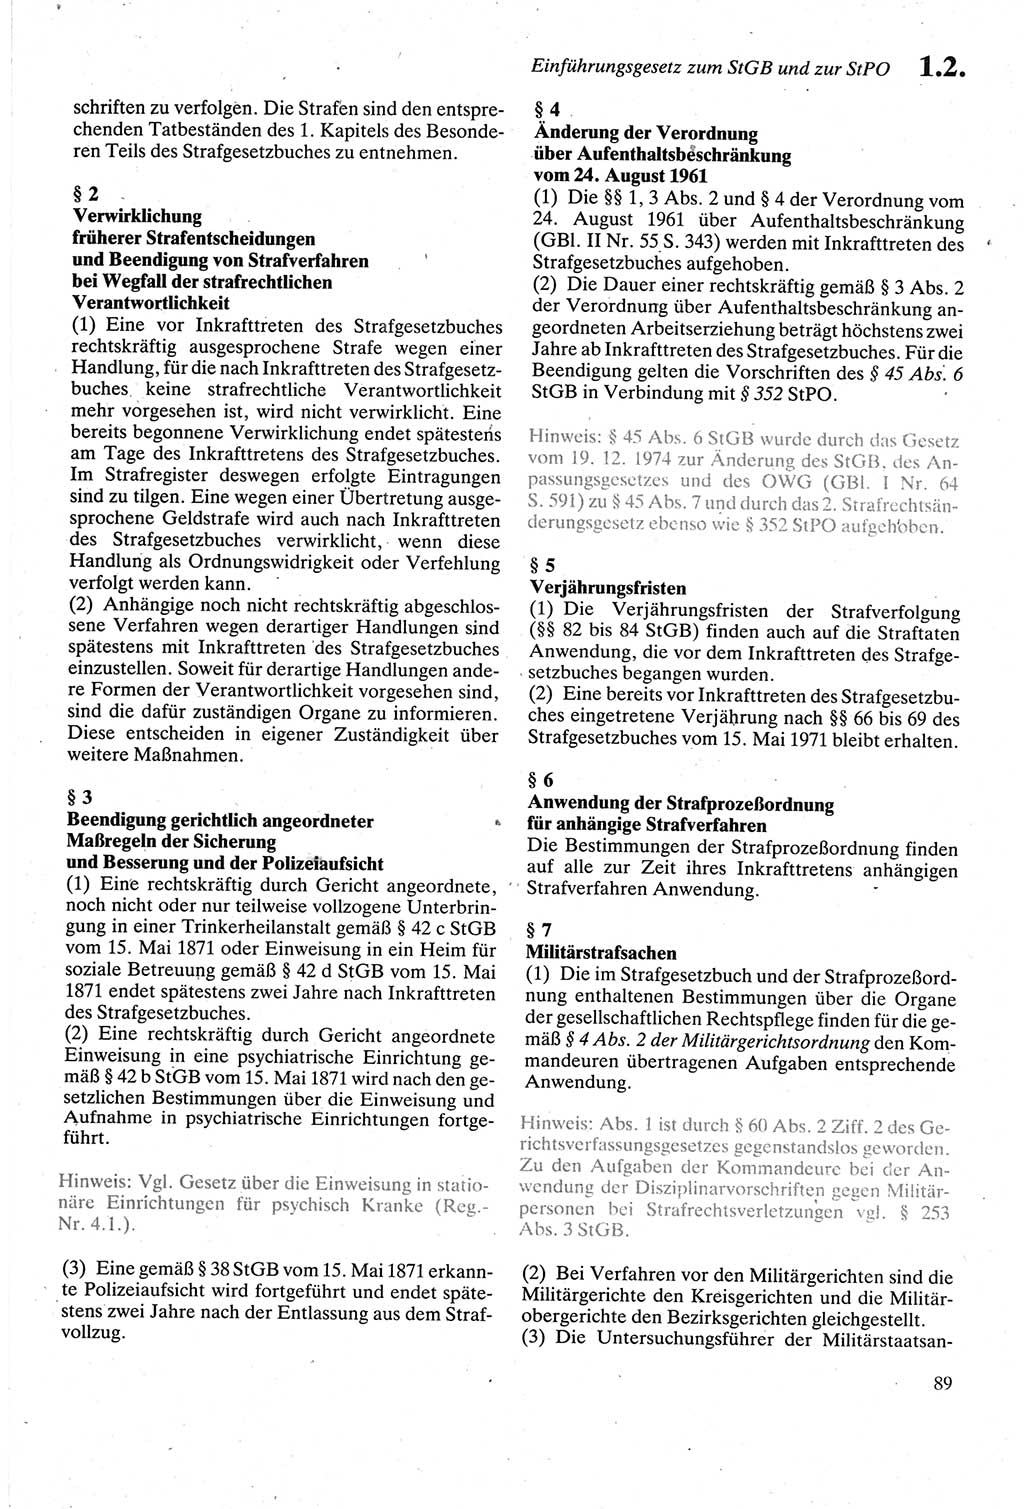 Strafgesetzbuch (StGB) der Deutschen Demokratischen Republik (DDR) sowie angrenzende Gesetze und Bestimmungen 1979, Seite 89 (StGB DDR Ges. Best. 1979, S. 89)